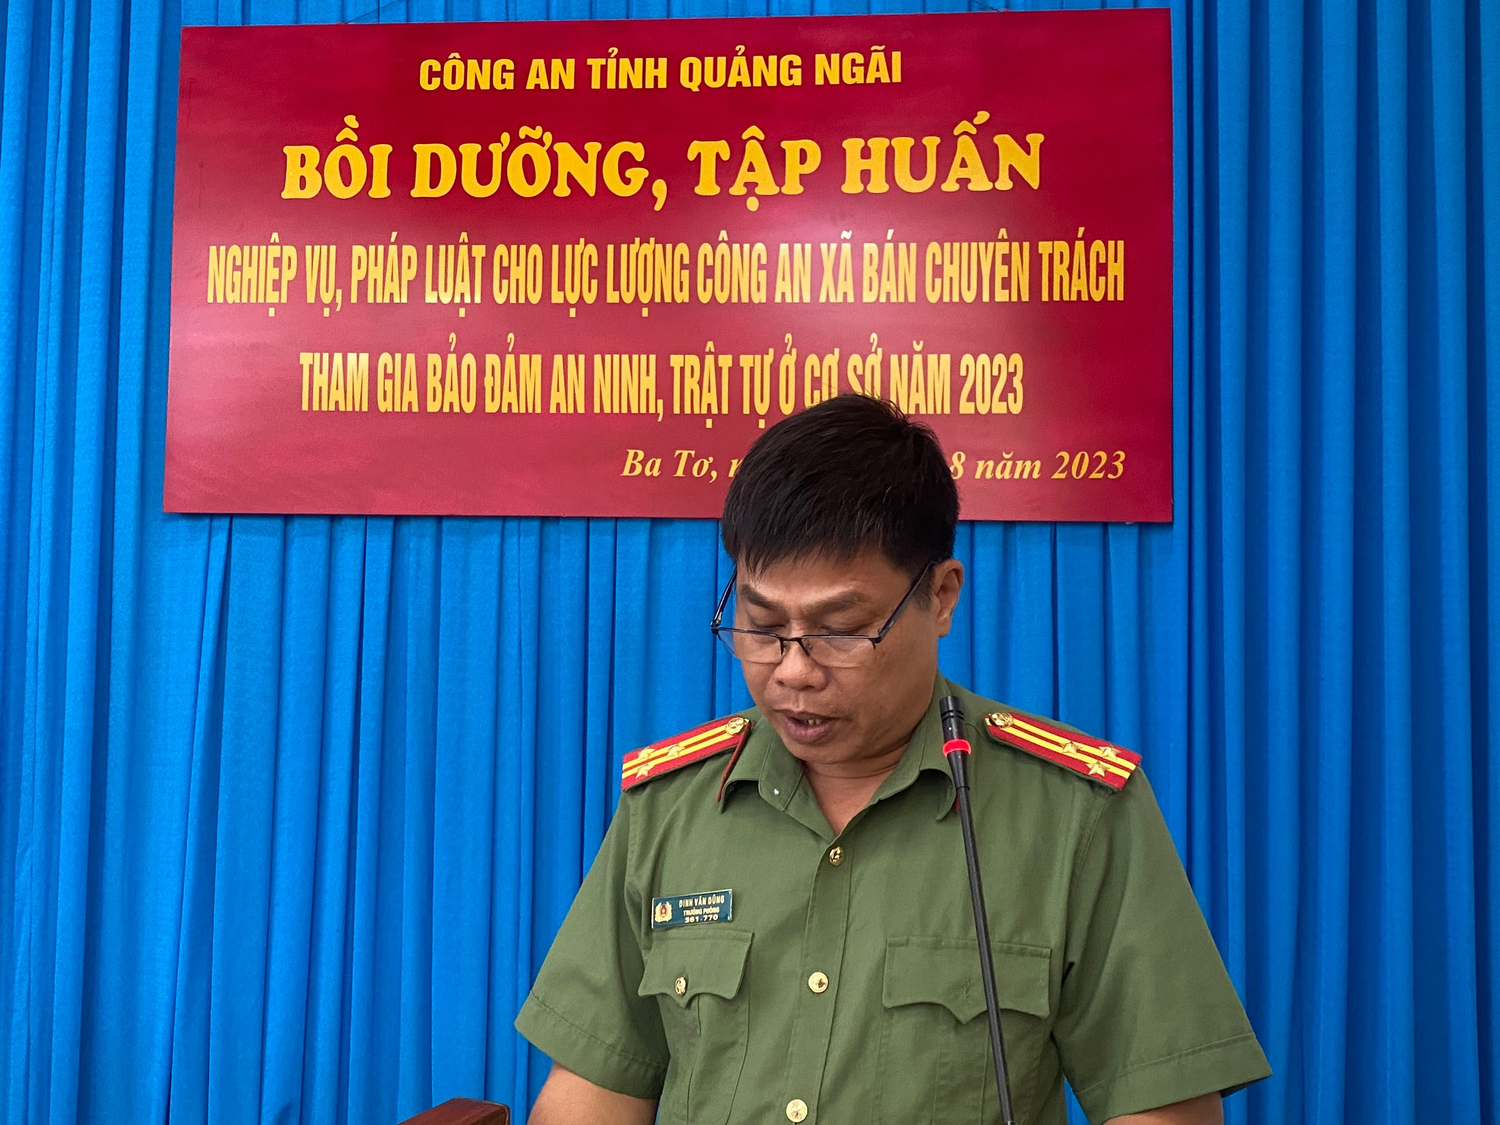 Hội nghị tập huấn bồi dưỡng nghiệp vụ cho lực lượng Công an xã bán chuyên trách trên địa bàn huyện Ba Tơ